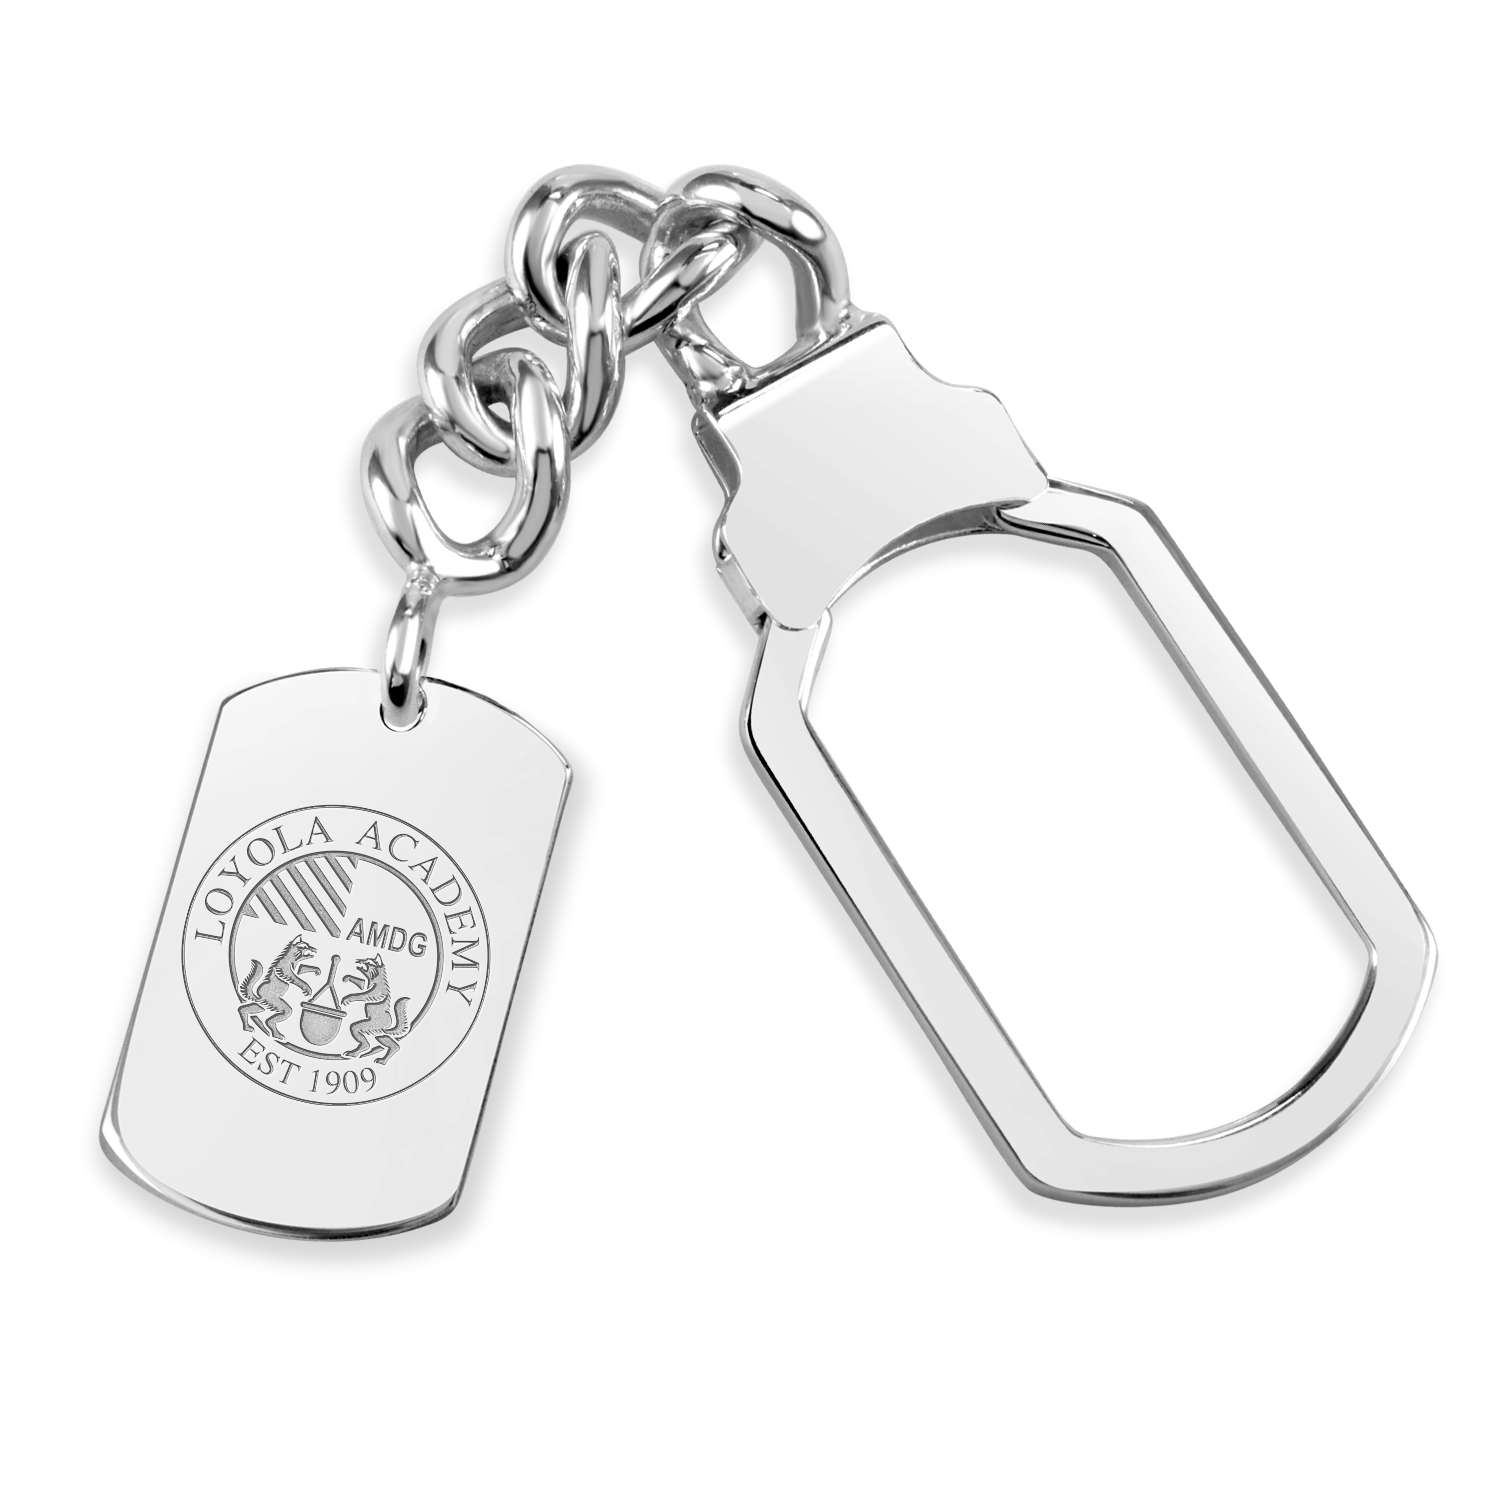 Loyola Academy Seal Tag Tension Key Chain